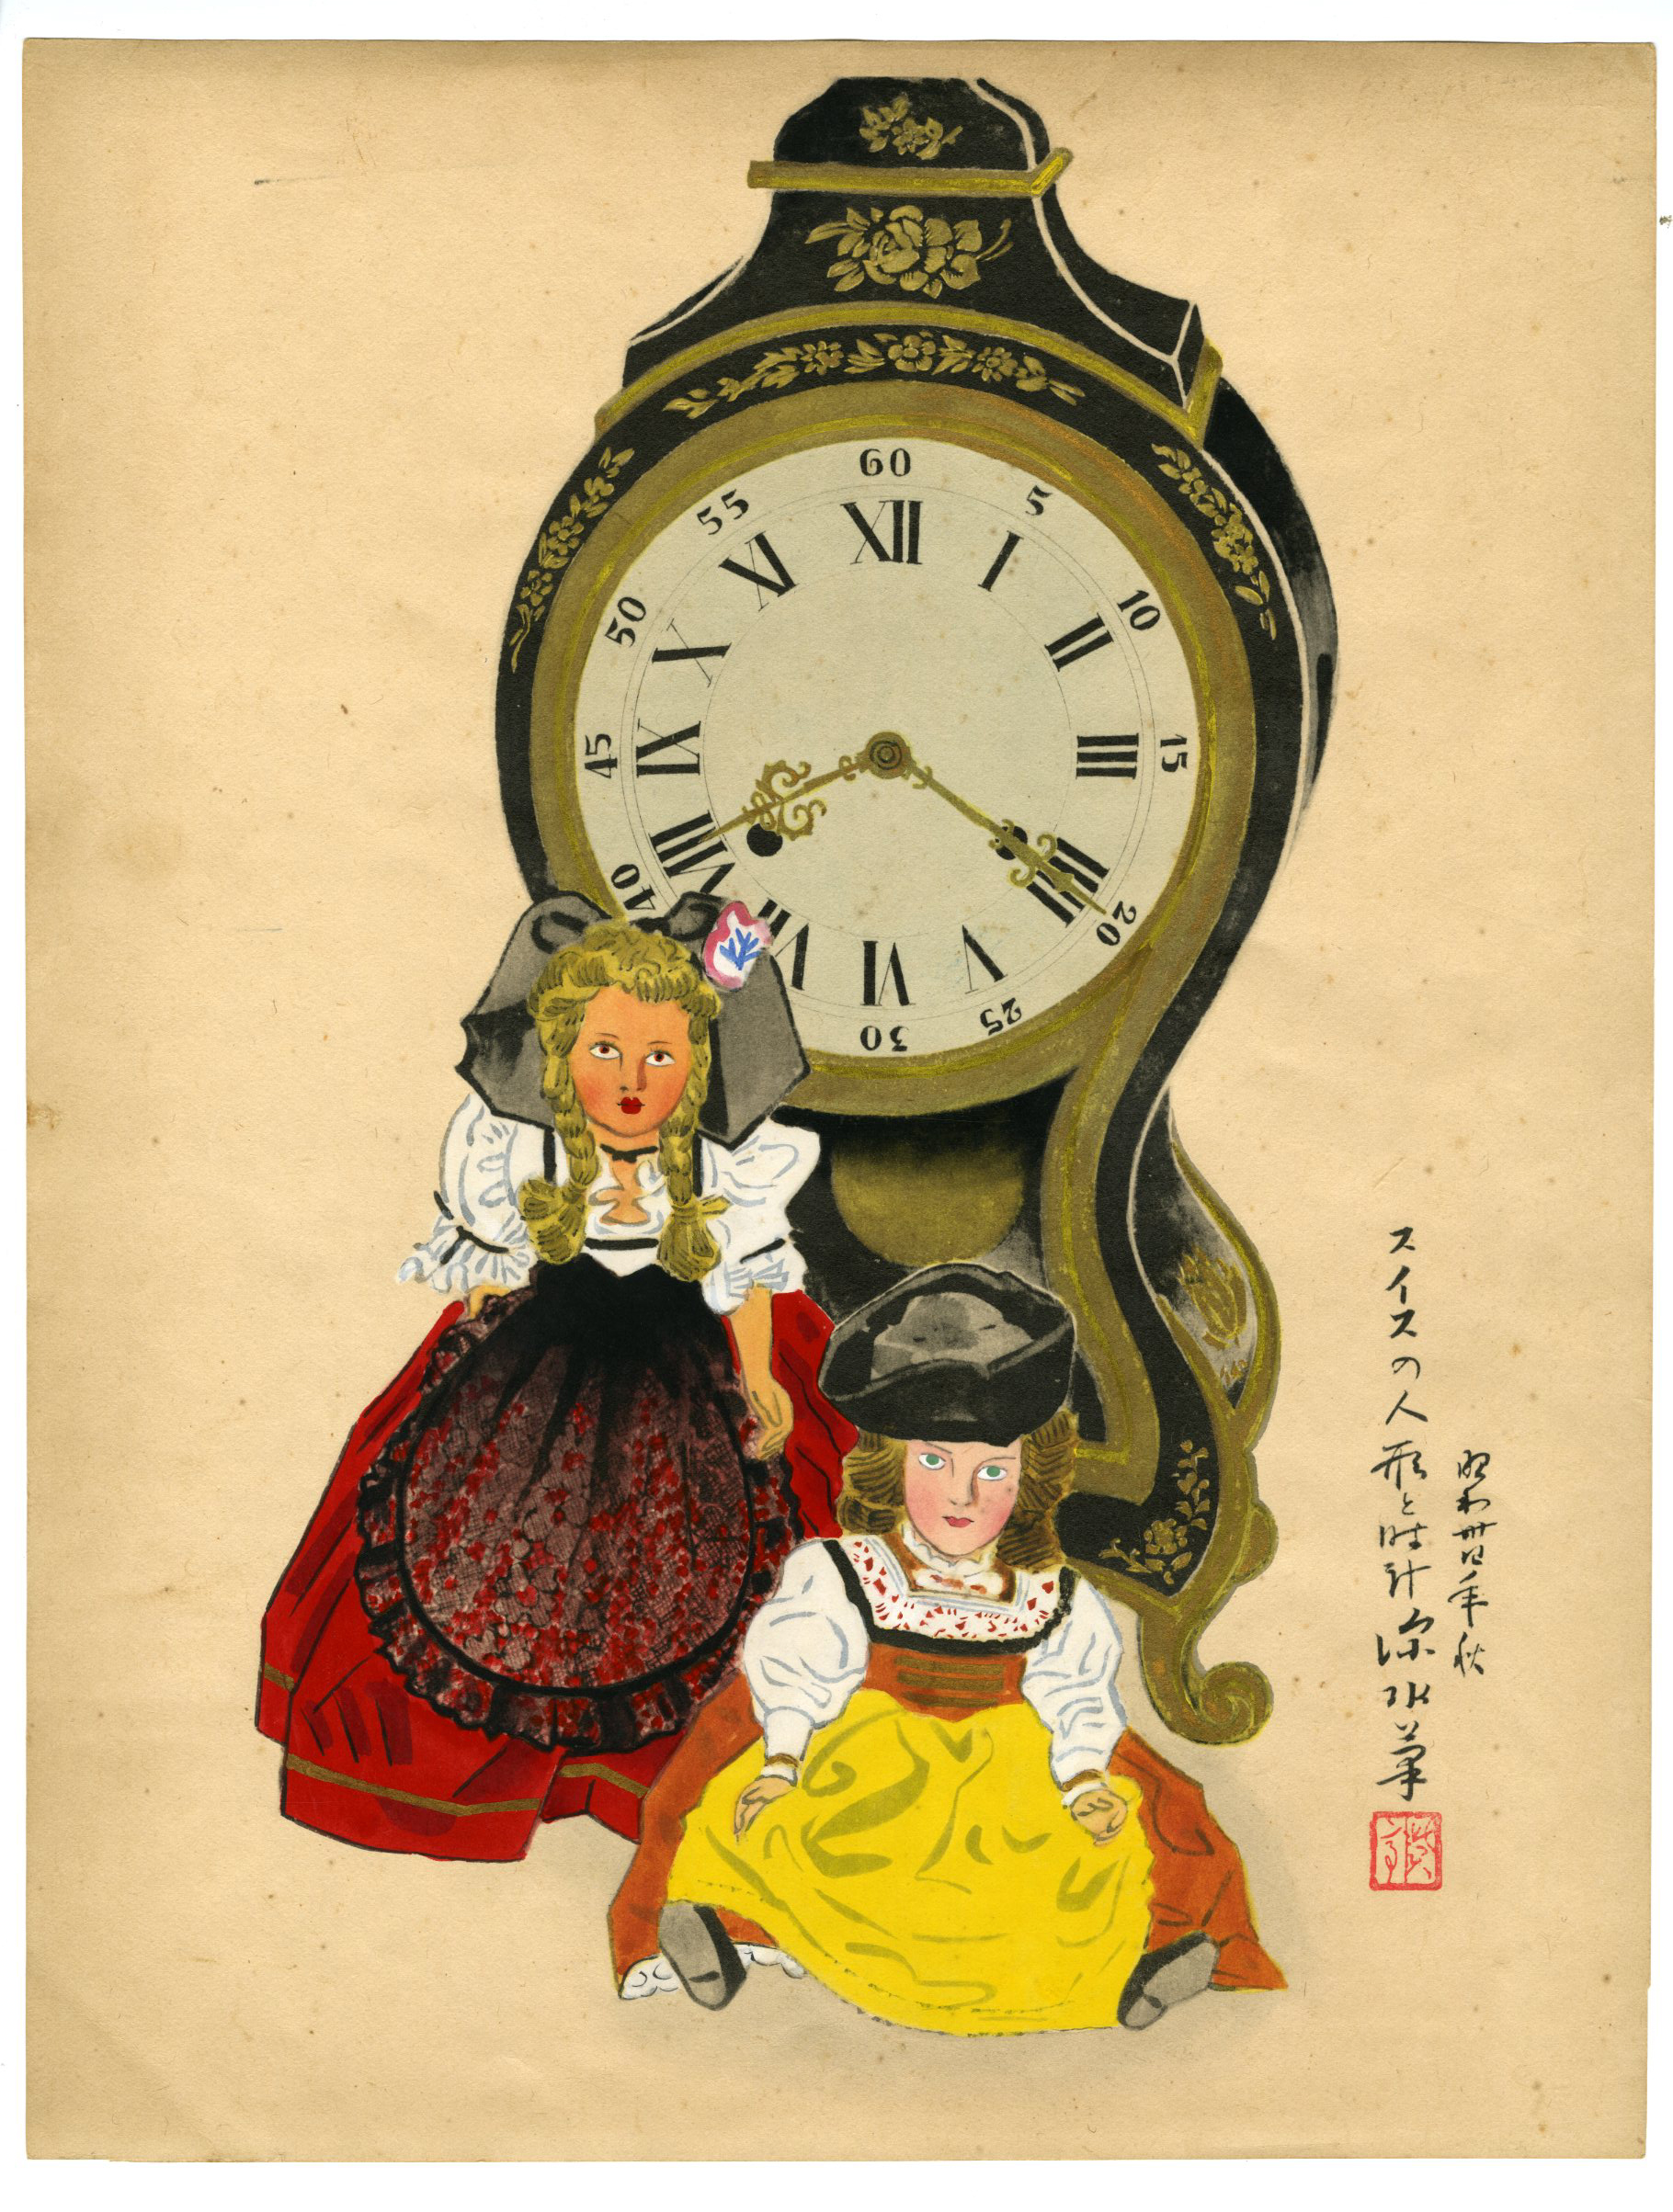 Ito Shinsui - Swiss Doll and Clock - Modern Prints - Ukiyoe